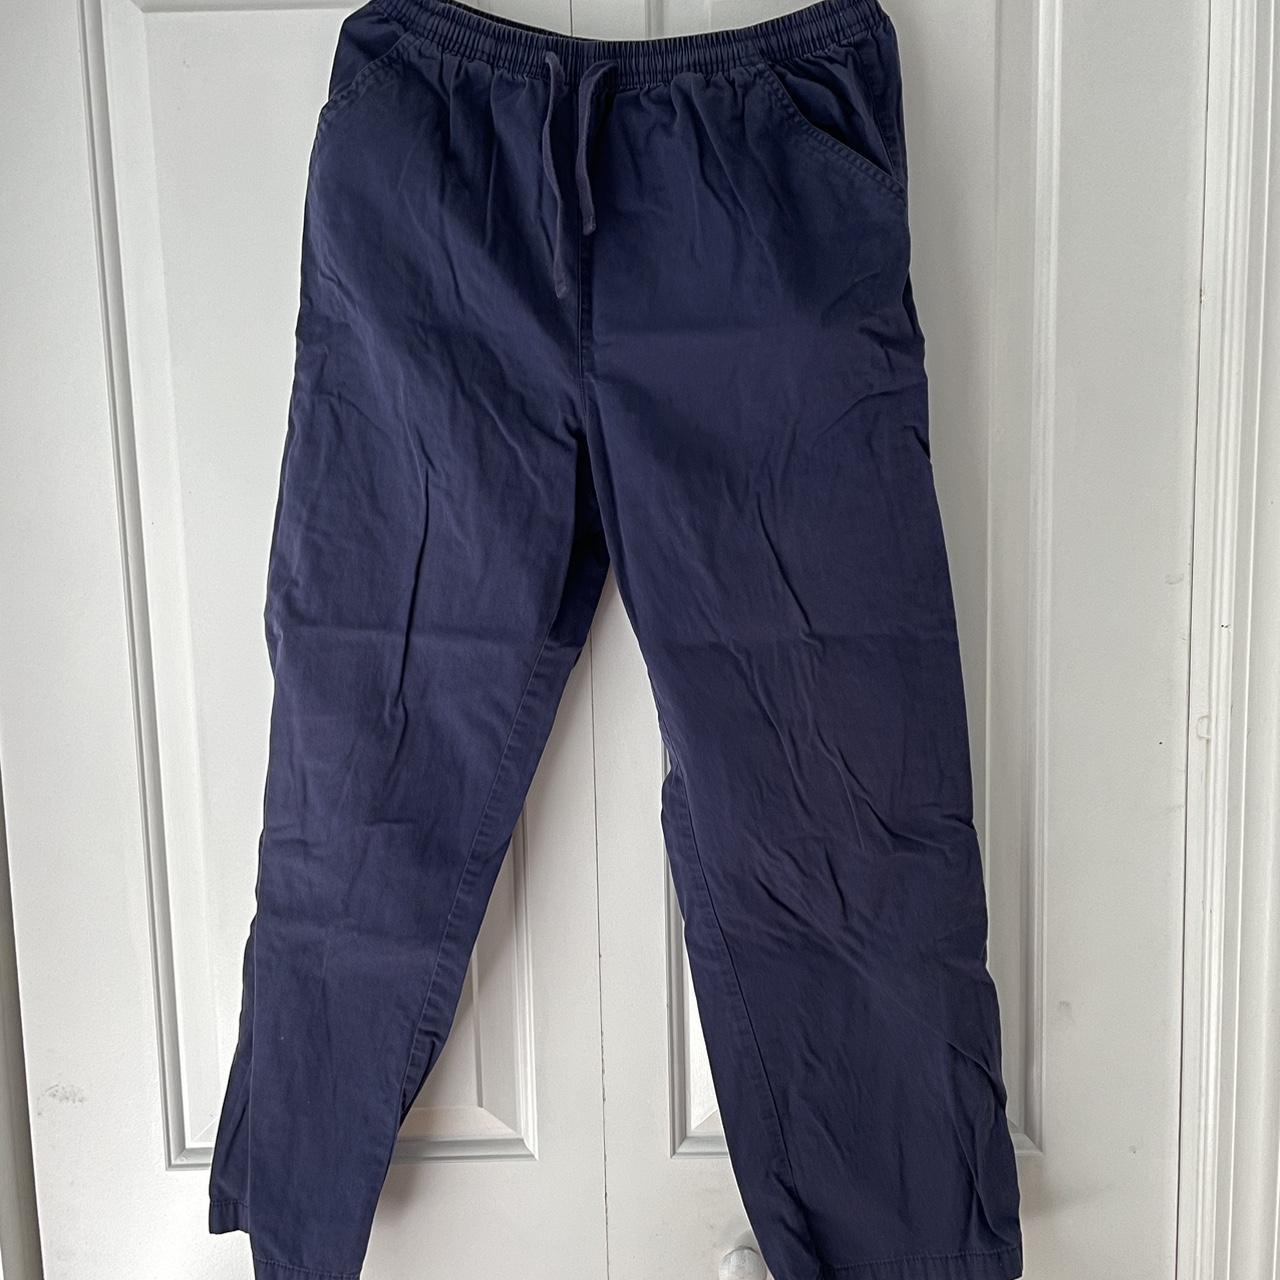 Vintage Damart blue pants. Size M. - Depop